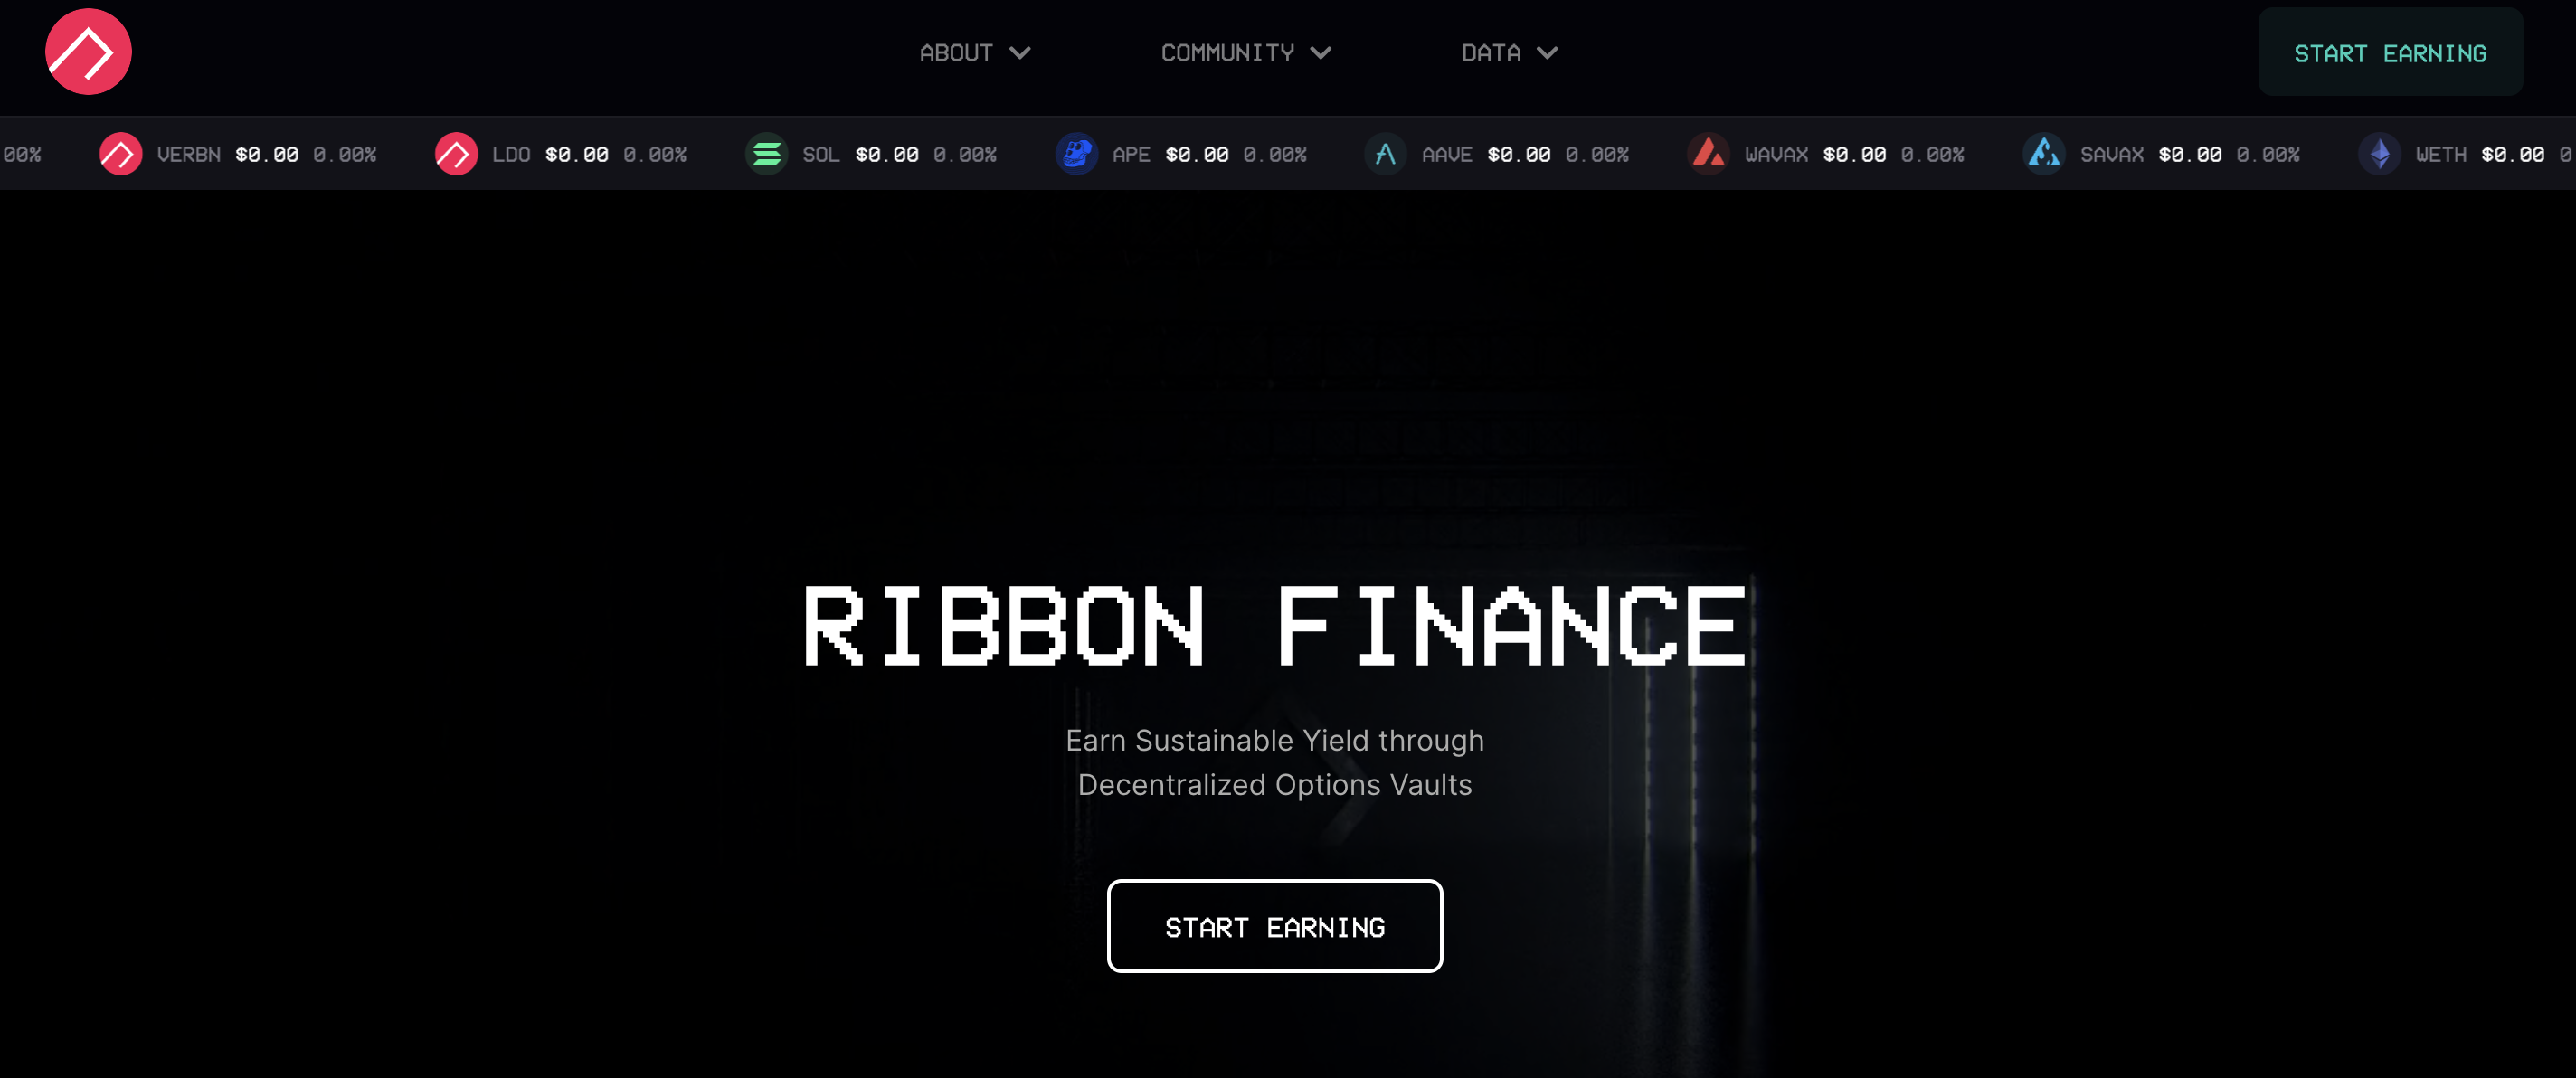 https://www.ribbon.finance/